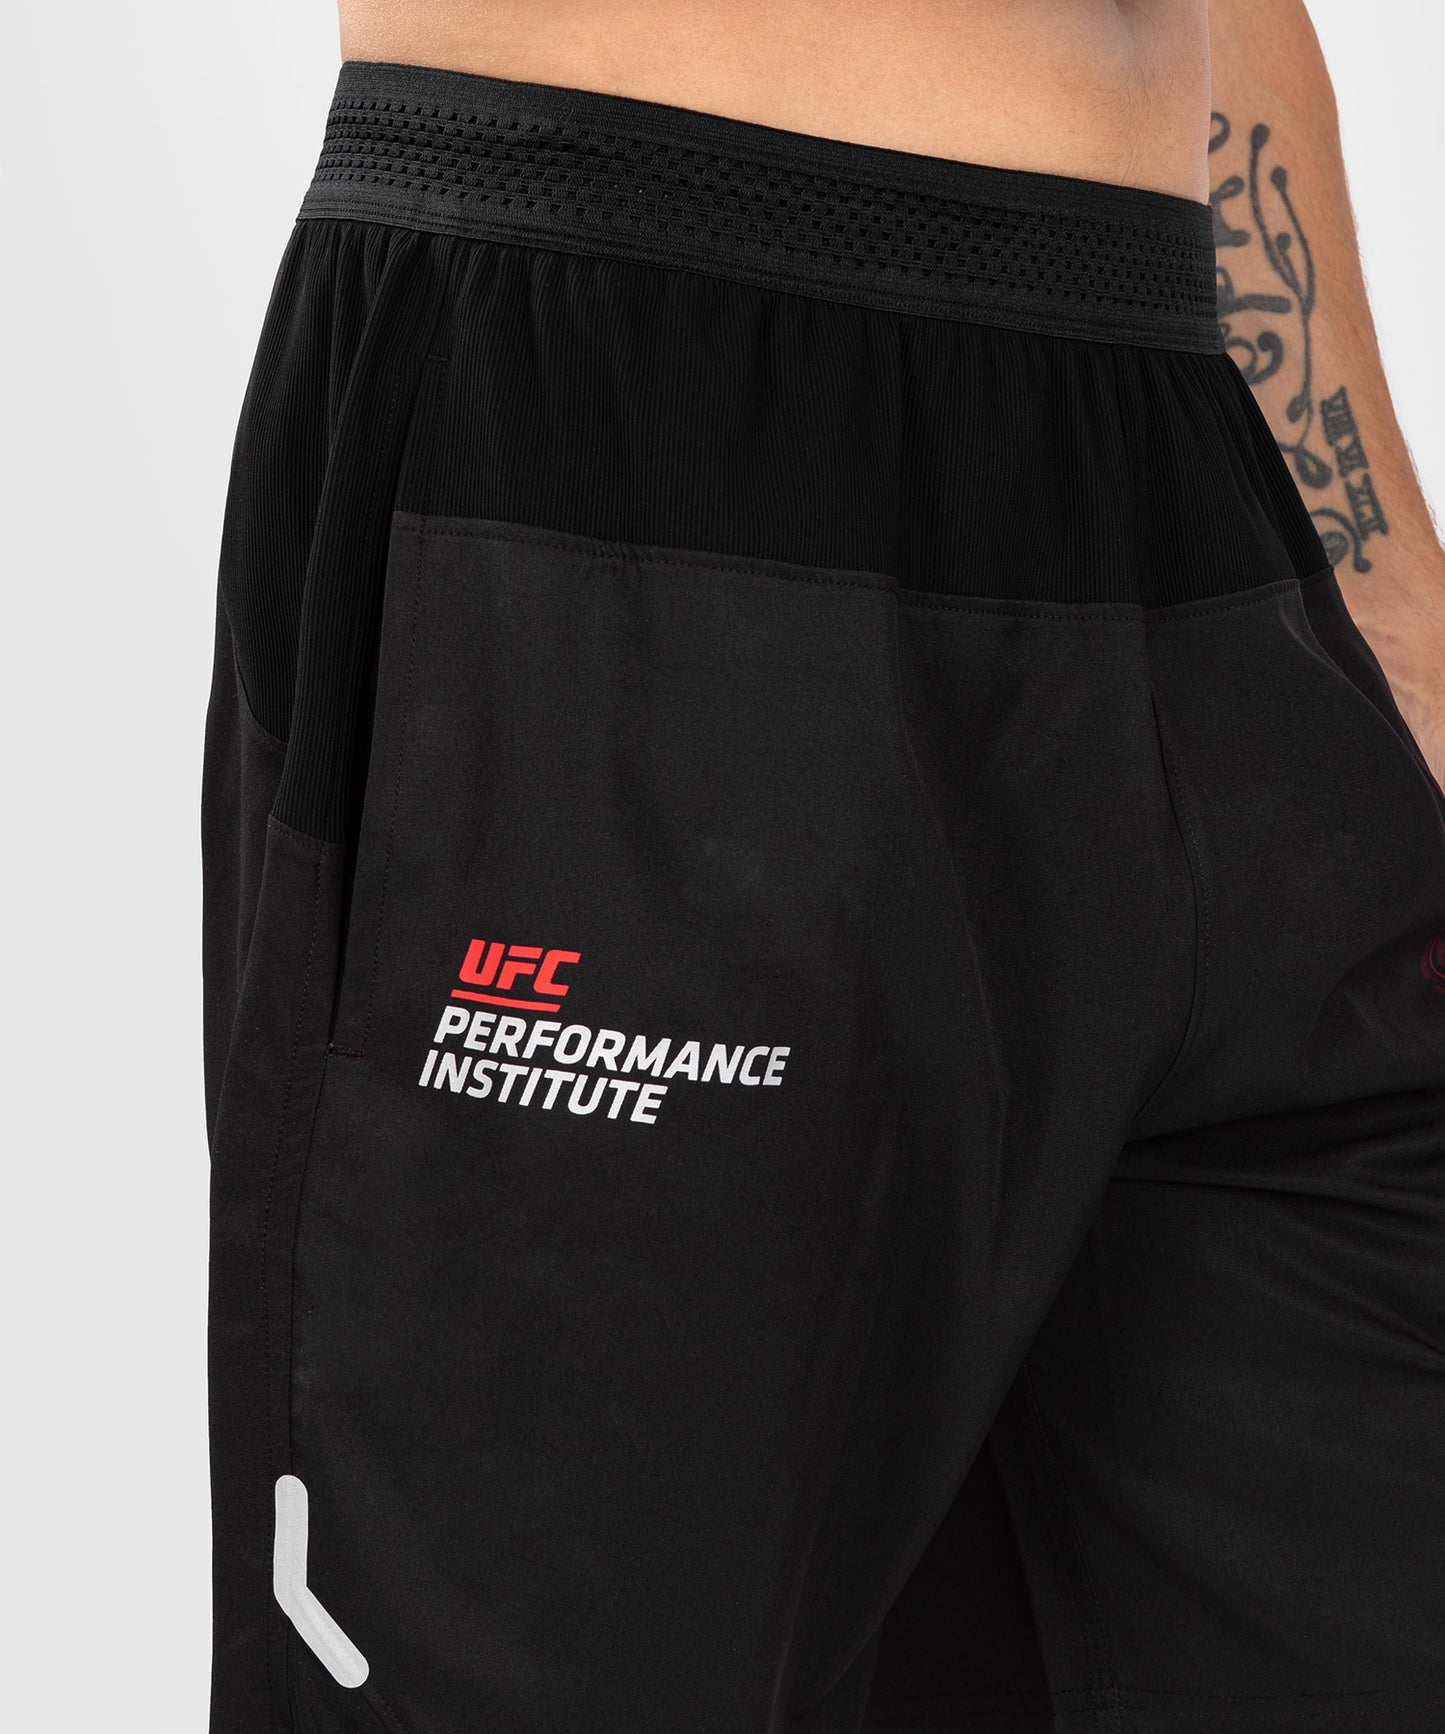 Short de performance pour hommes UFC Venum Performance Institute 2.0 - Noir/Rouge